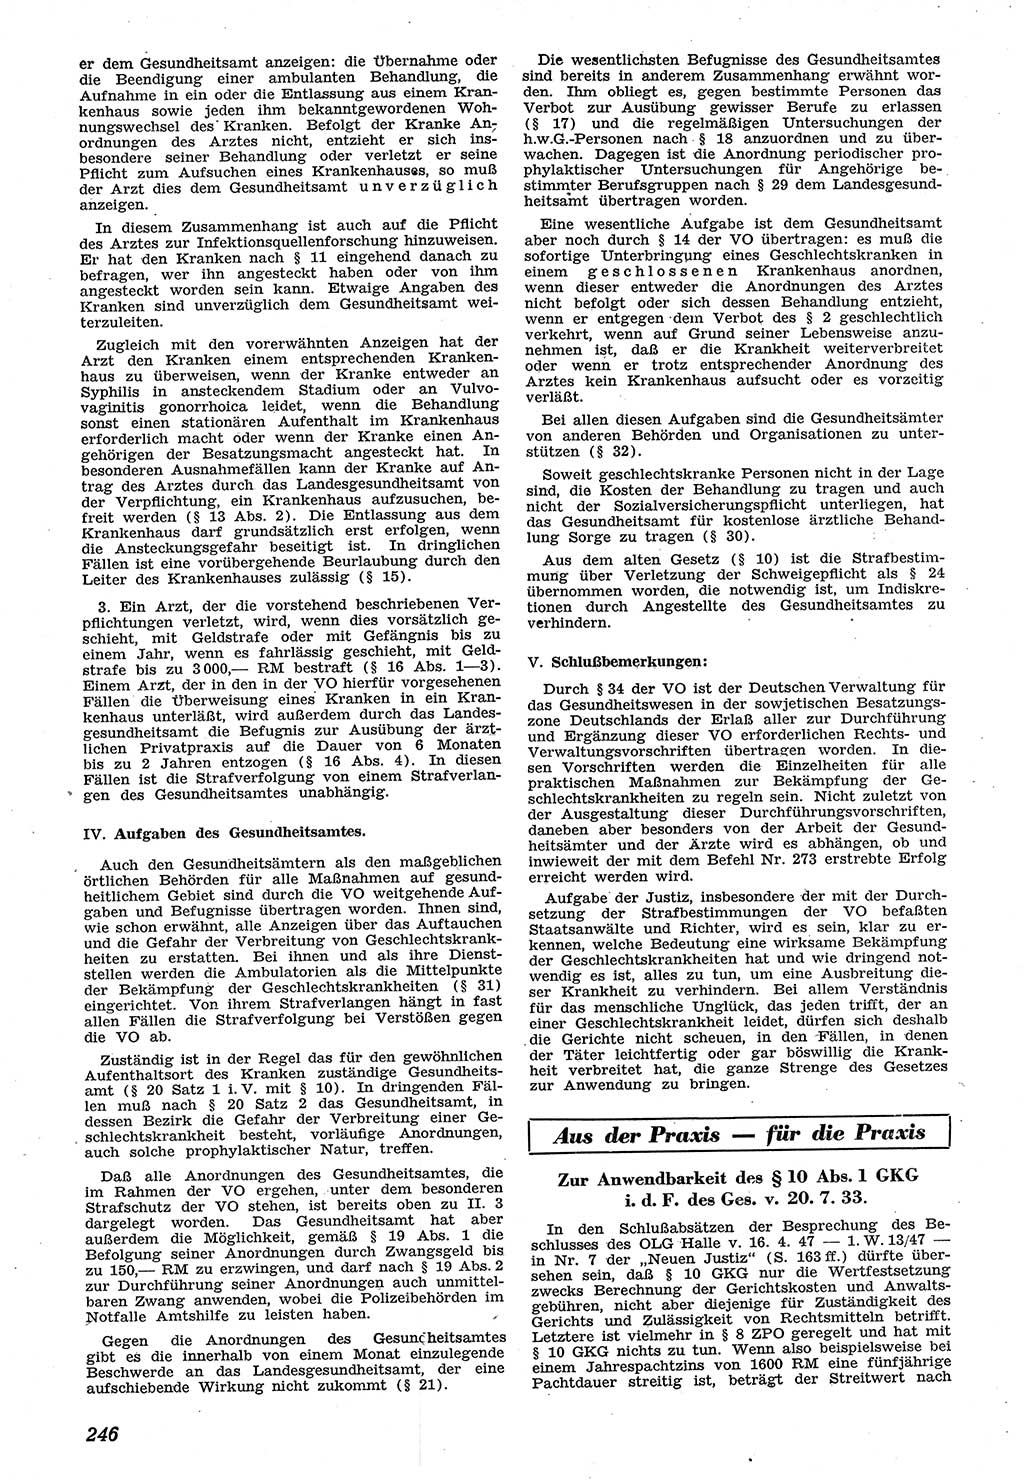 Neue Justiz (NJ), Zeitschrift für Recht und Rechtswissenschaft [Sowjetische Besatzungszone (SBZ) Deutschland], 1. Jahrgang 1947, Seite 246 (NJ SBZ Dtl. 1947, S. 246)